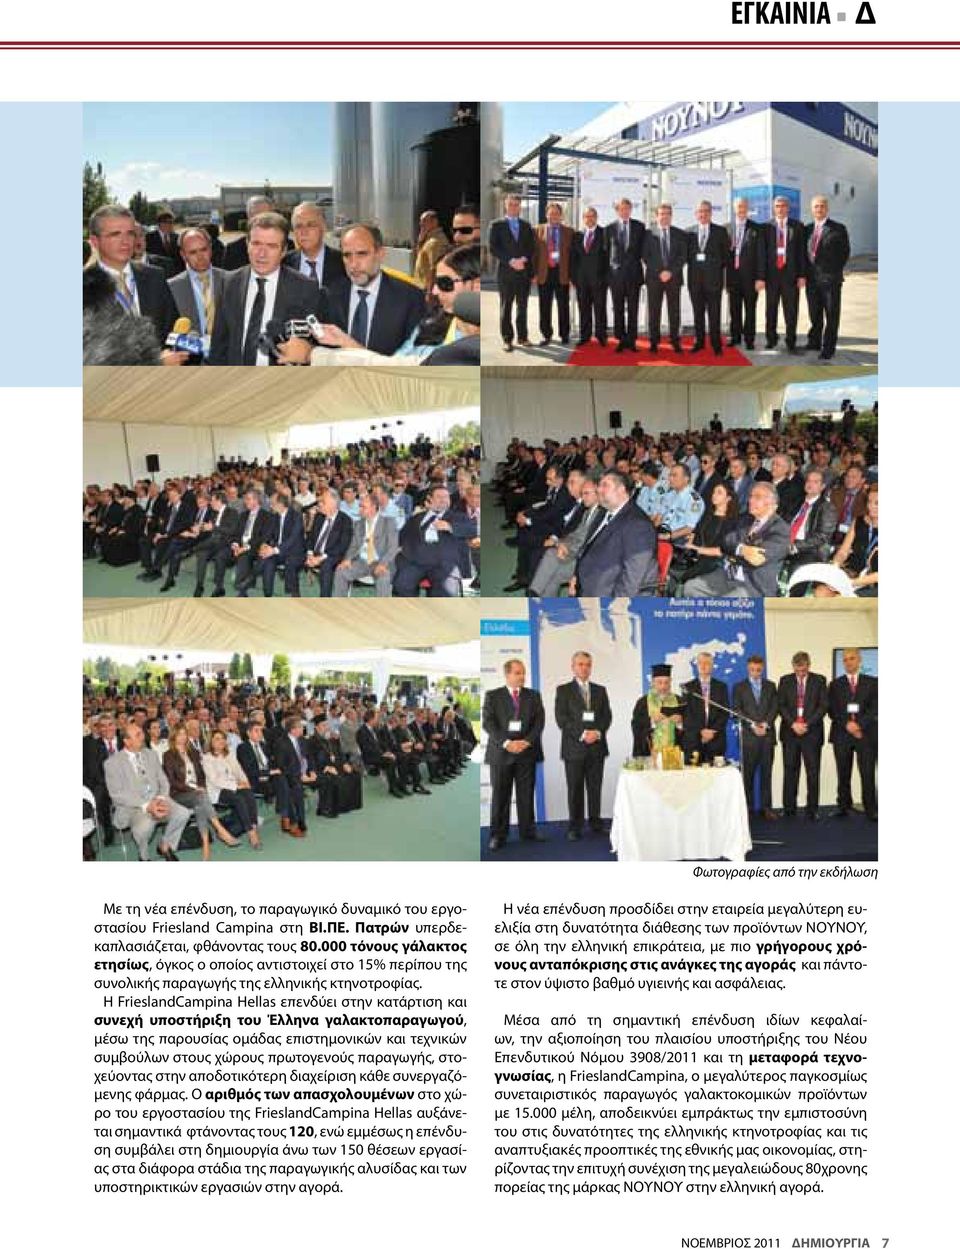 Η FrieslandCampina Hellas επενδύει στην κατάρτιση και συνεχή υποστήριξη του Έλληνα γαλακτοπαραγωγού, μέσω της παρουσίας ομάδας επιστημονικών και τεχνικών συμβούλων στους χώρους πρωτογενούς παραγωγής,